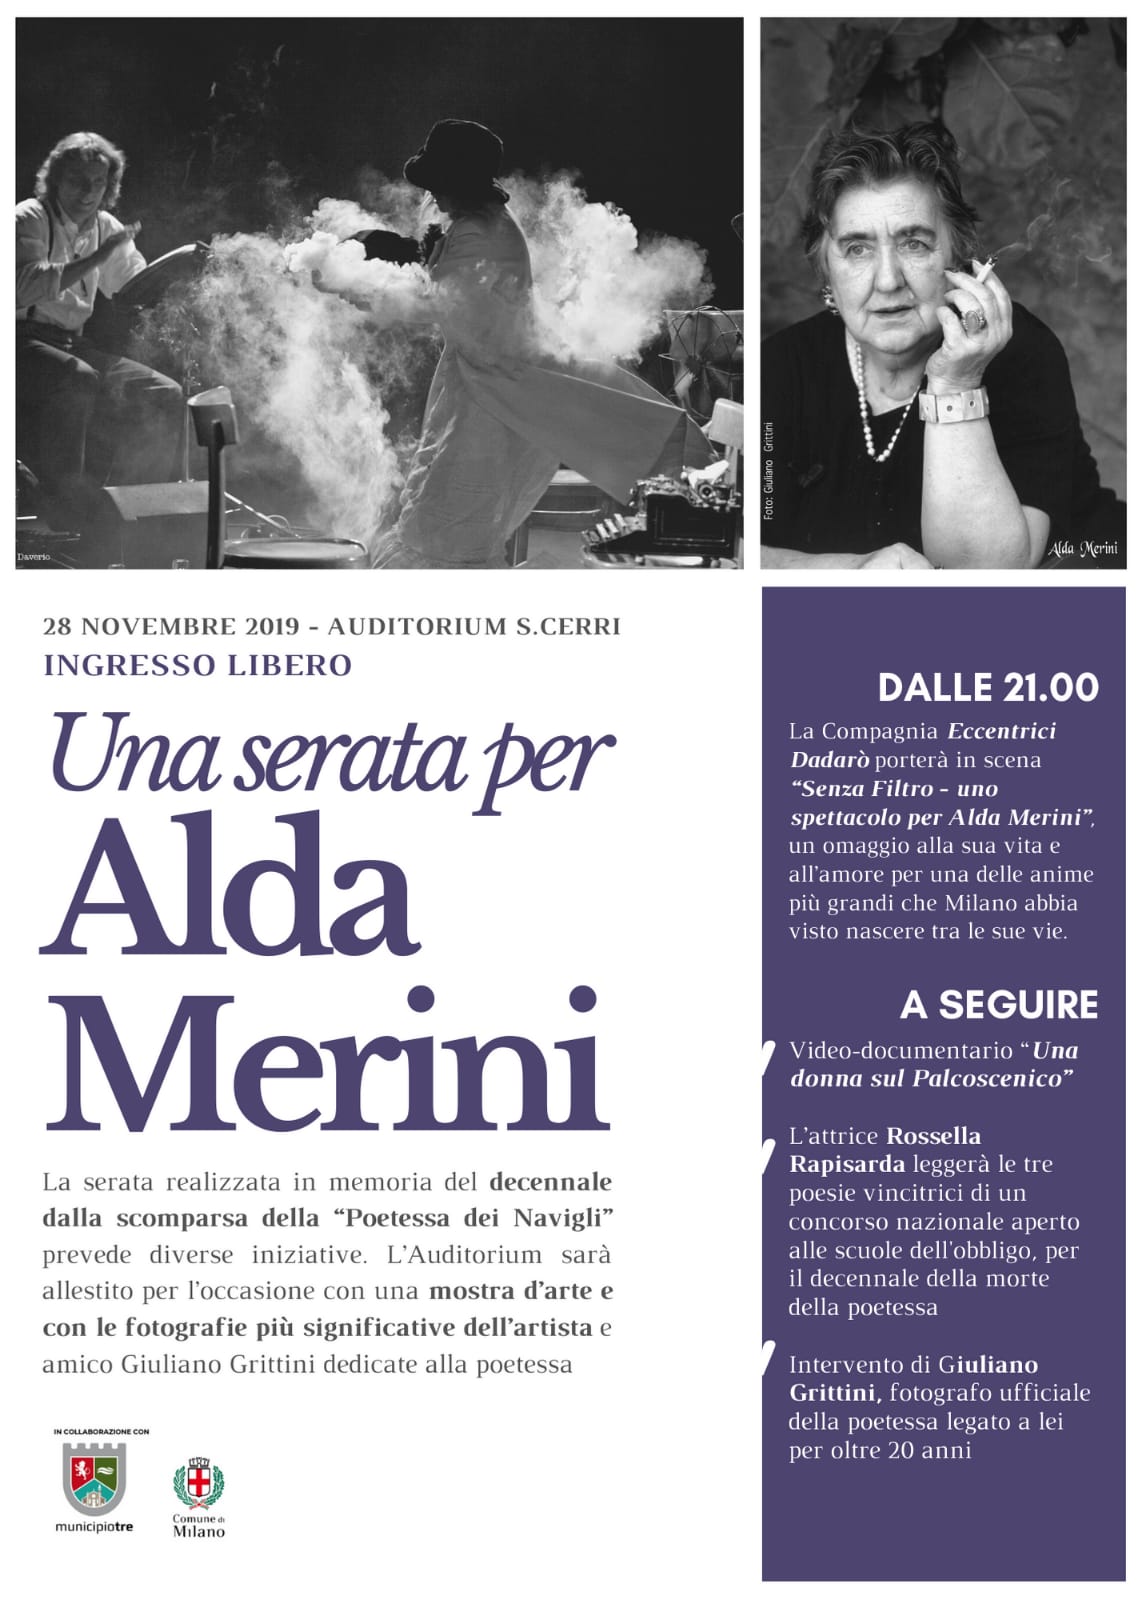 Poesie Di Natale Alda Merini.Gli Eccentrici Dadaro Una Serata Per Alda Merini 28 11 Milano